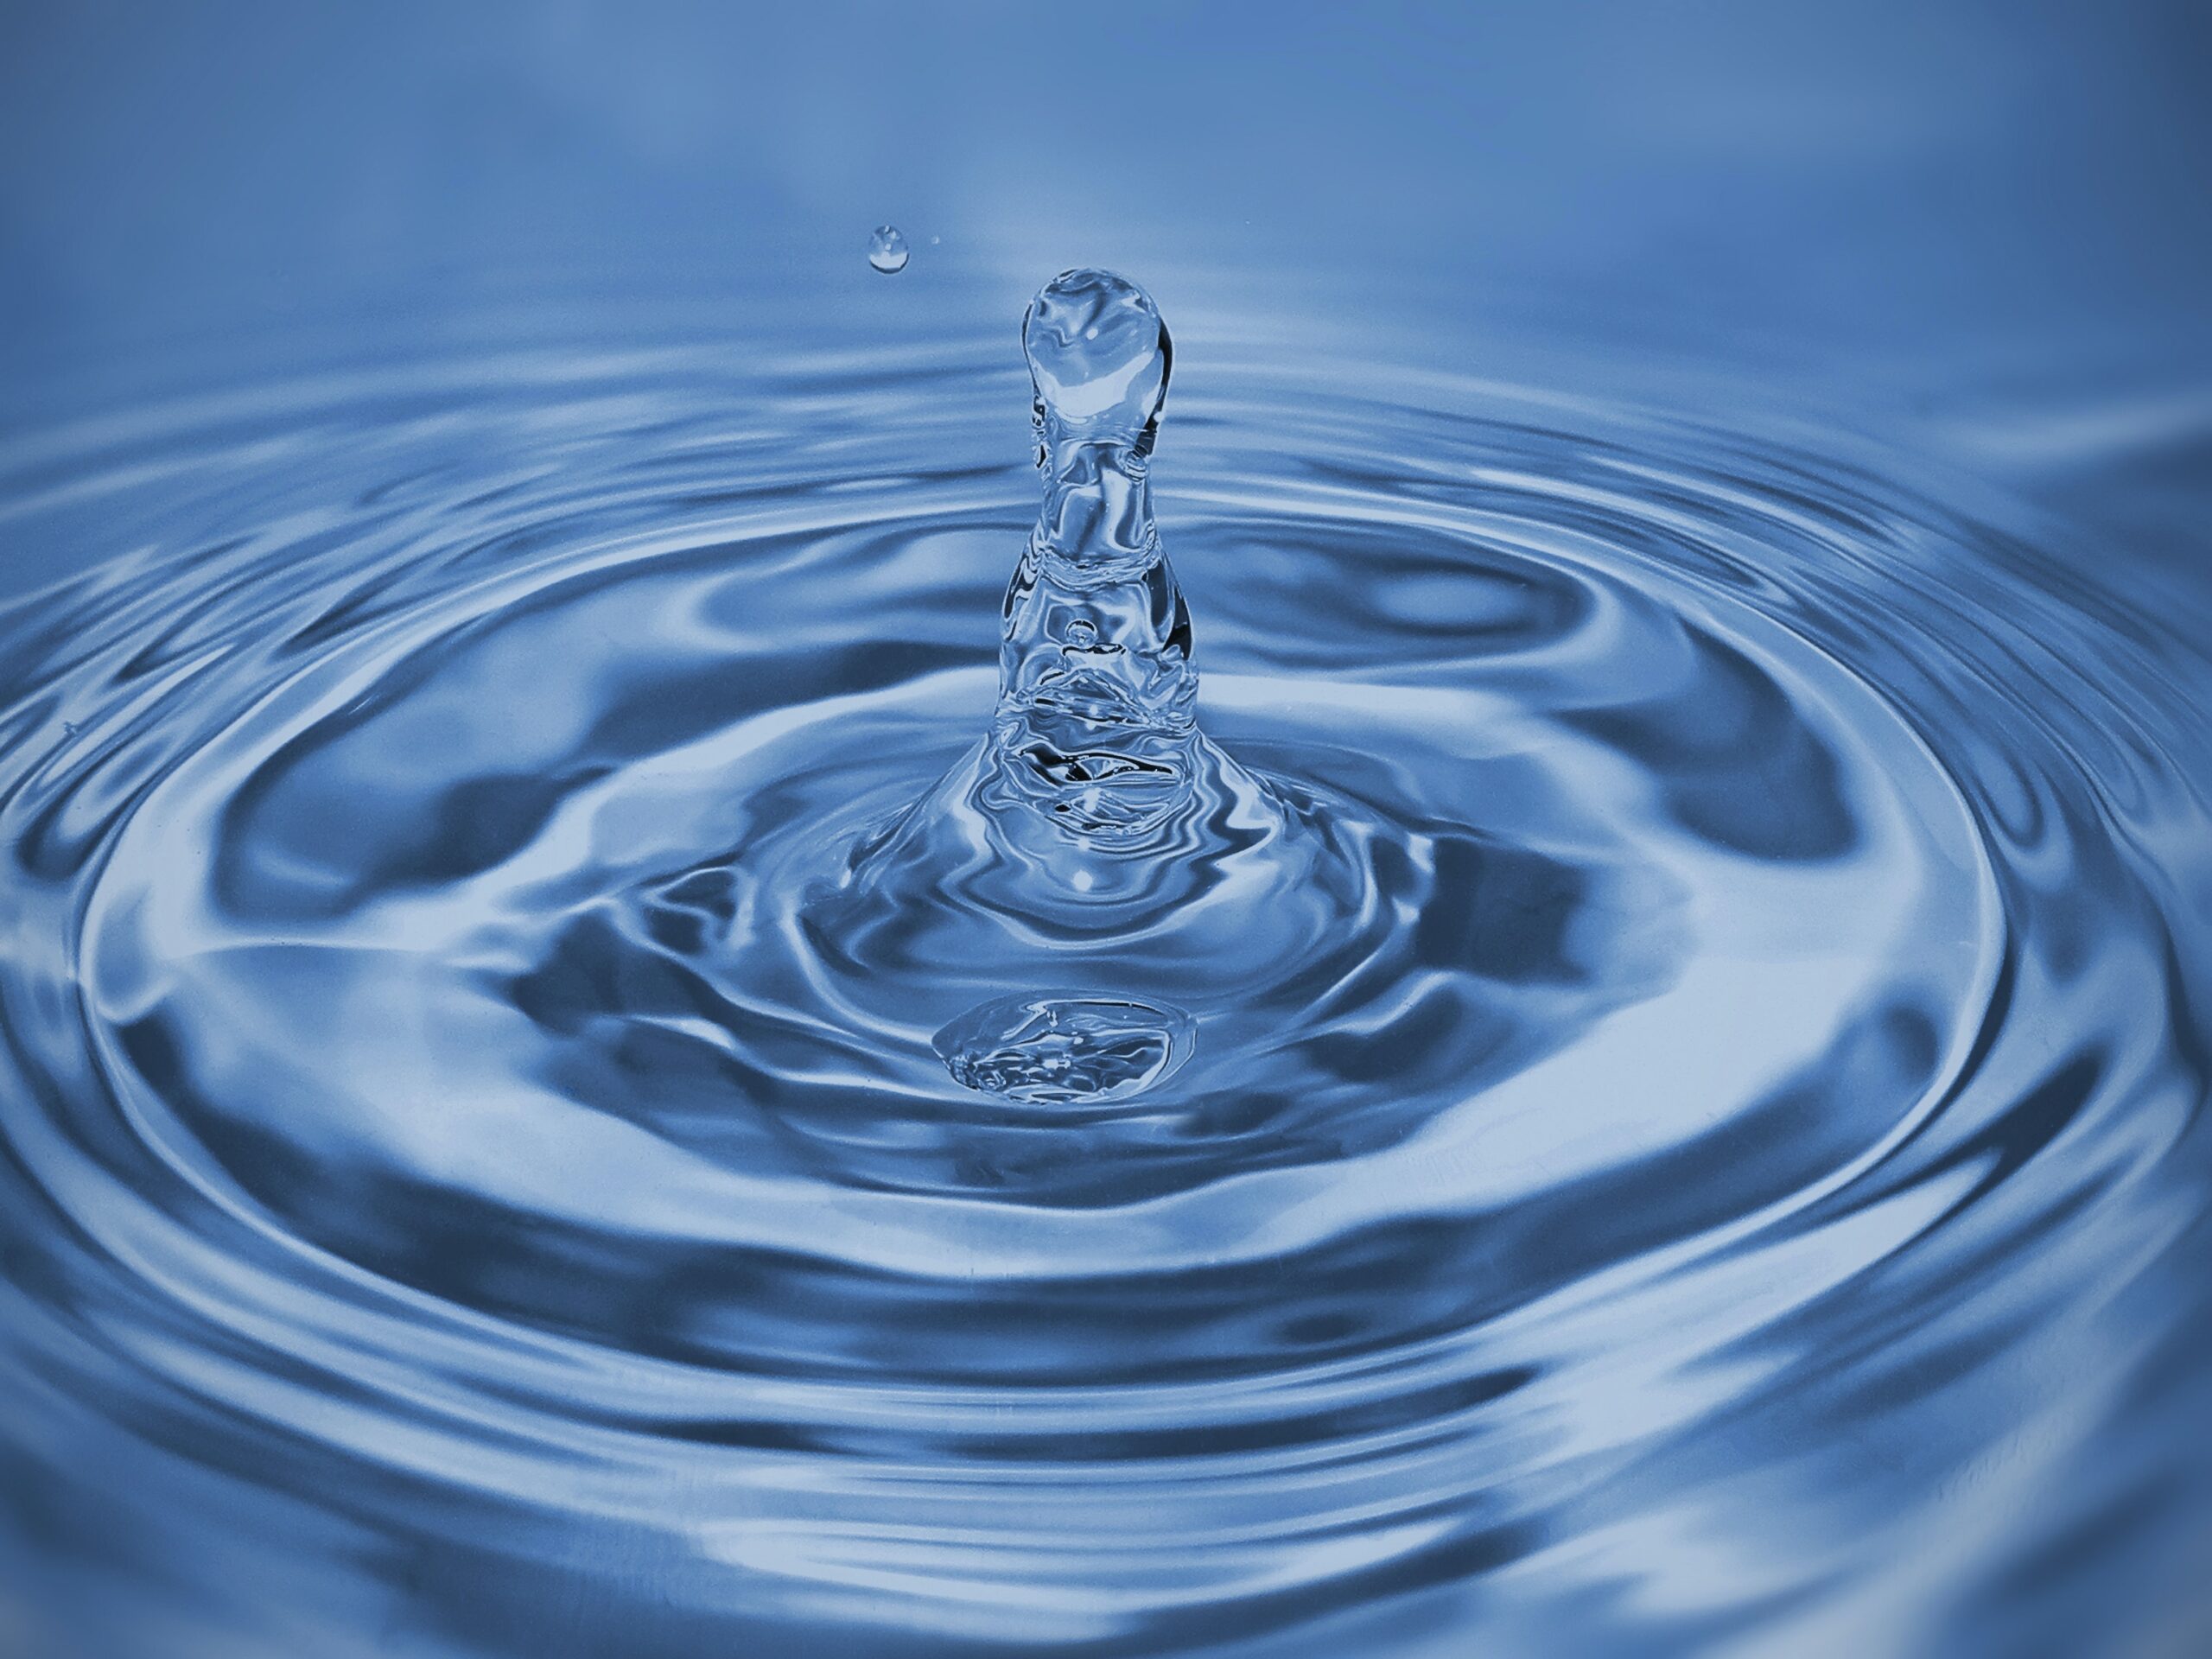 Zbiornik na wodę deszczową — jak go wybrać